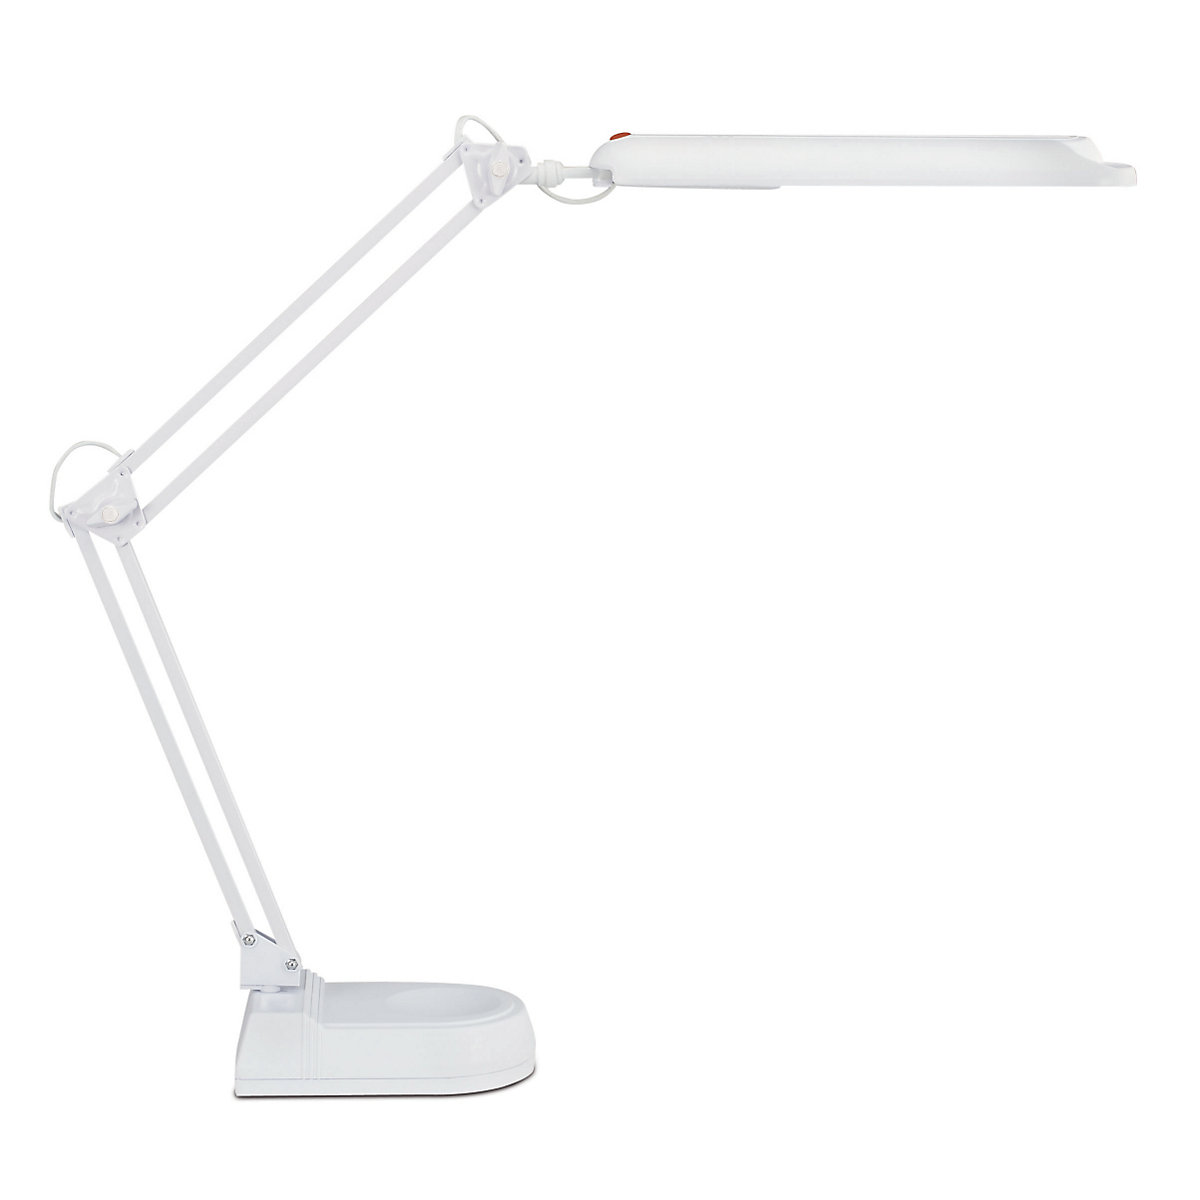 LED-lamp, 5800 K, 21 LED's – MAUL, met voet, wit-5